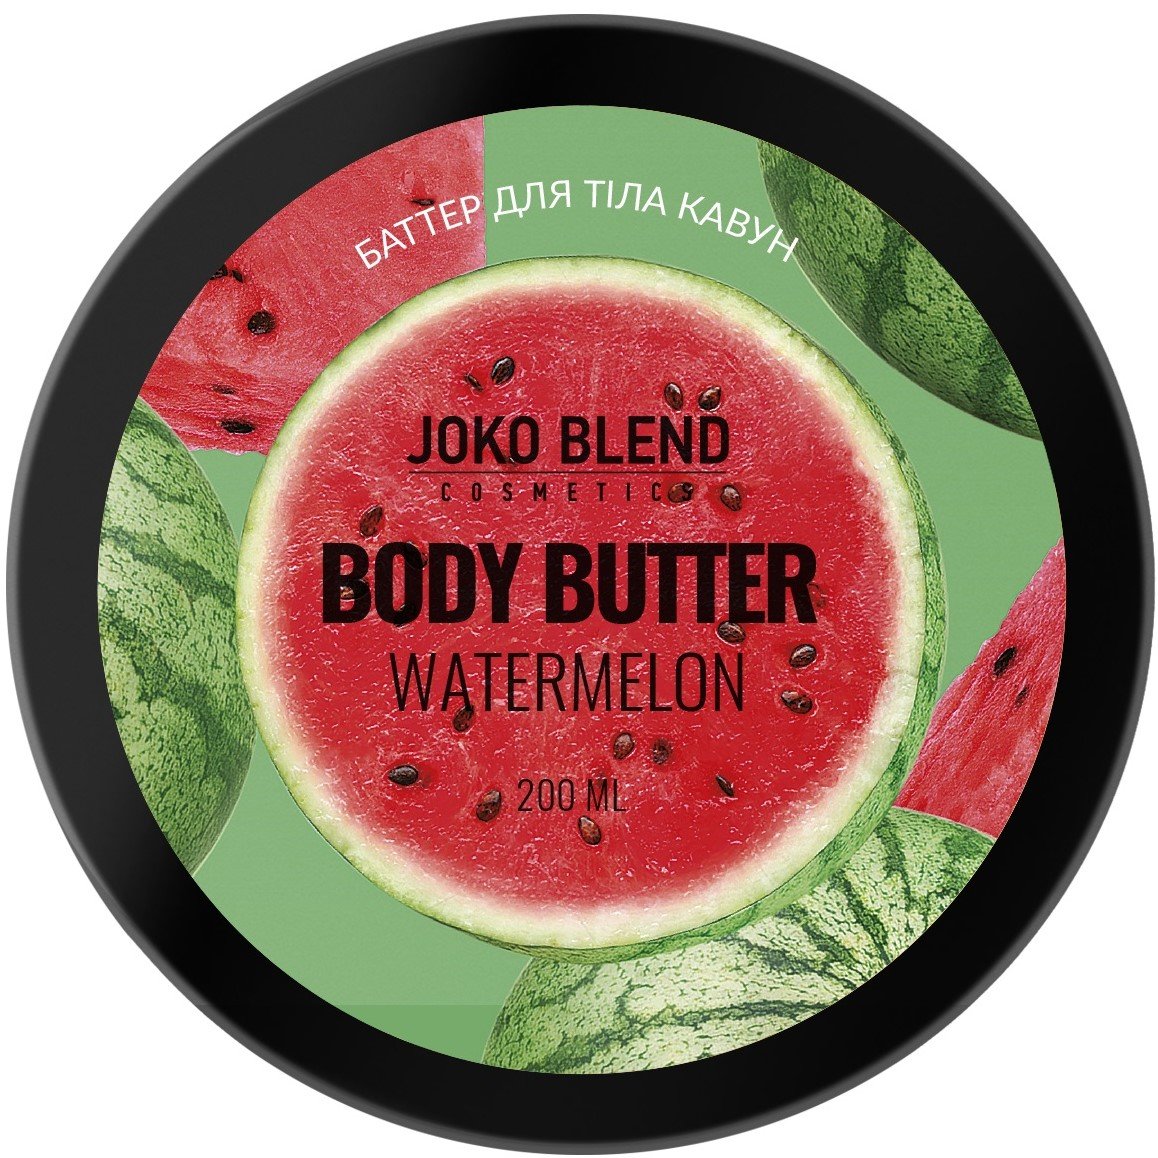 Баттер для тіла Joko Blend Watermelon 200 мл - фото 1